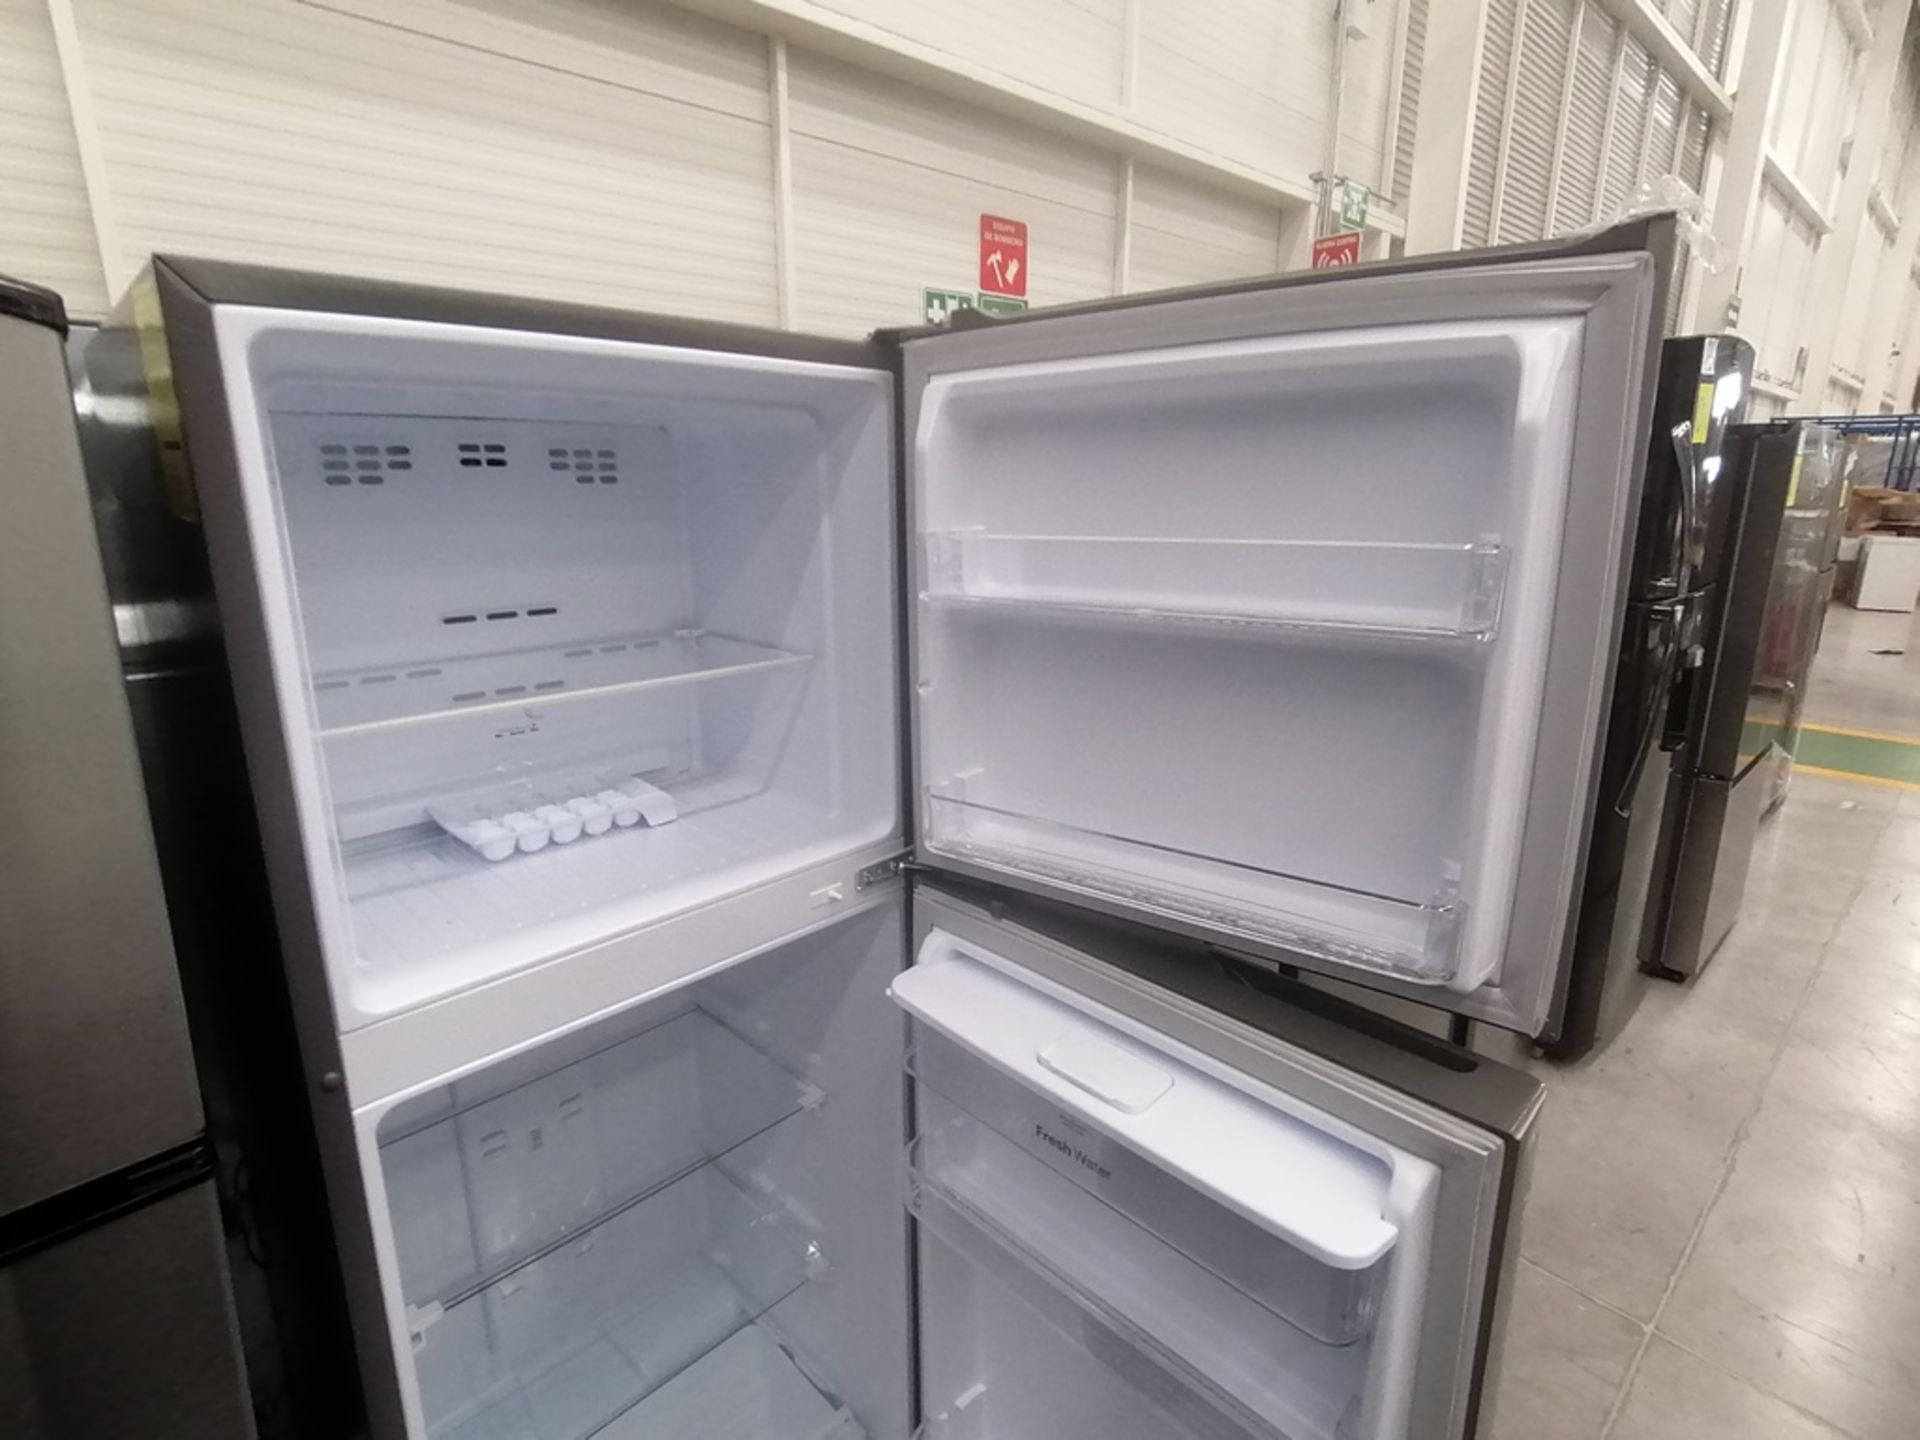 Lote de 2 refrigeradores incluye: 1 Refrigerador con dispensador de agua, Marca Winia, Modelo DFR32 - Image 12 of 15